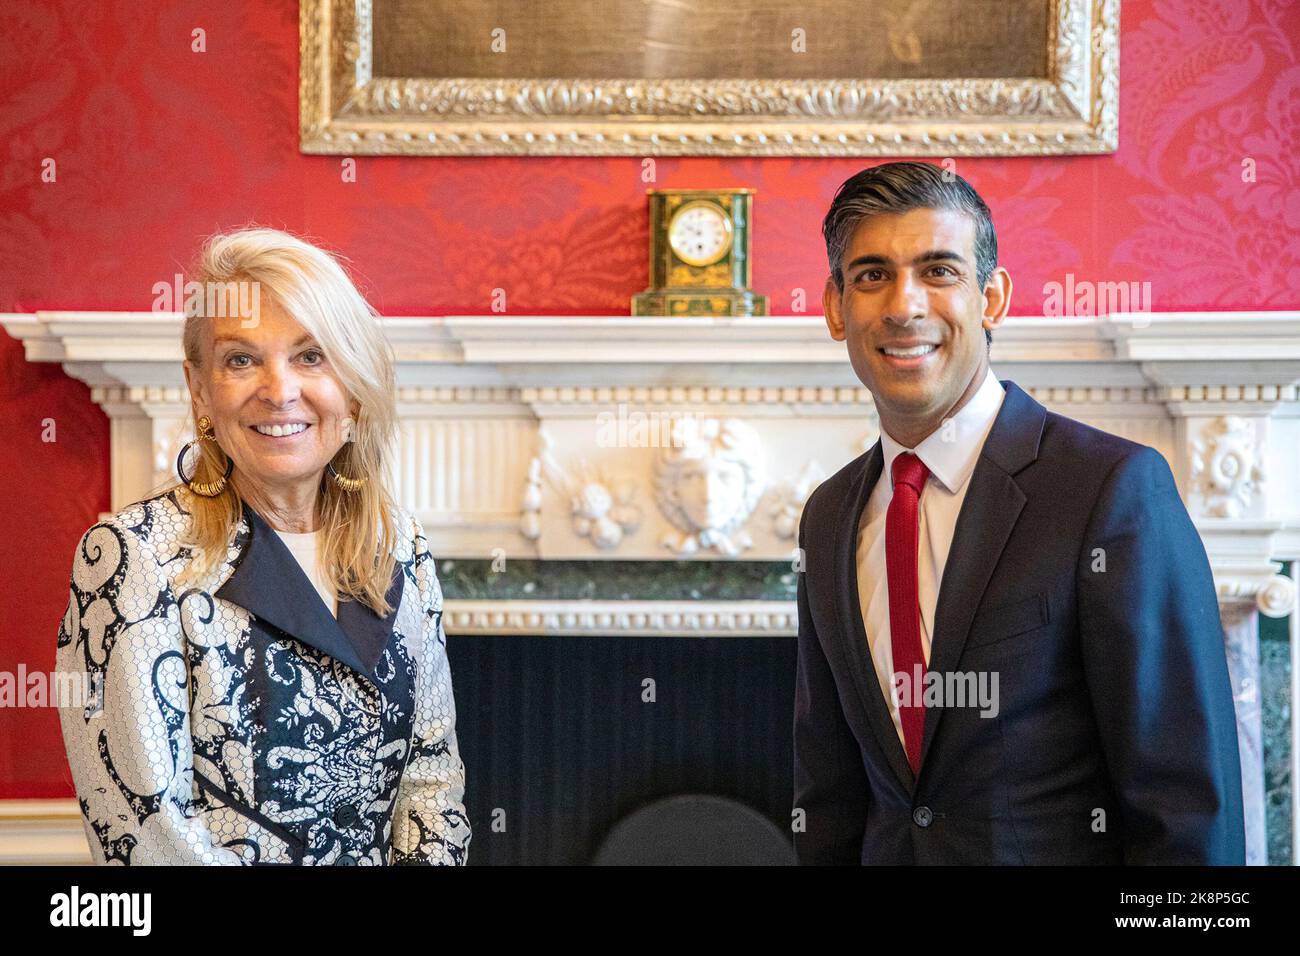 Rishi Sunak - Premier ministre du Royaume-Uni - rencontre en tant que chancelier de l'Échiquier avec Jane Hartley Ambassadeur des États-Unis au Royaume-Uni - 2022 Banque D'Images